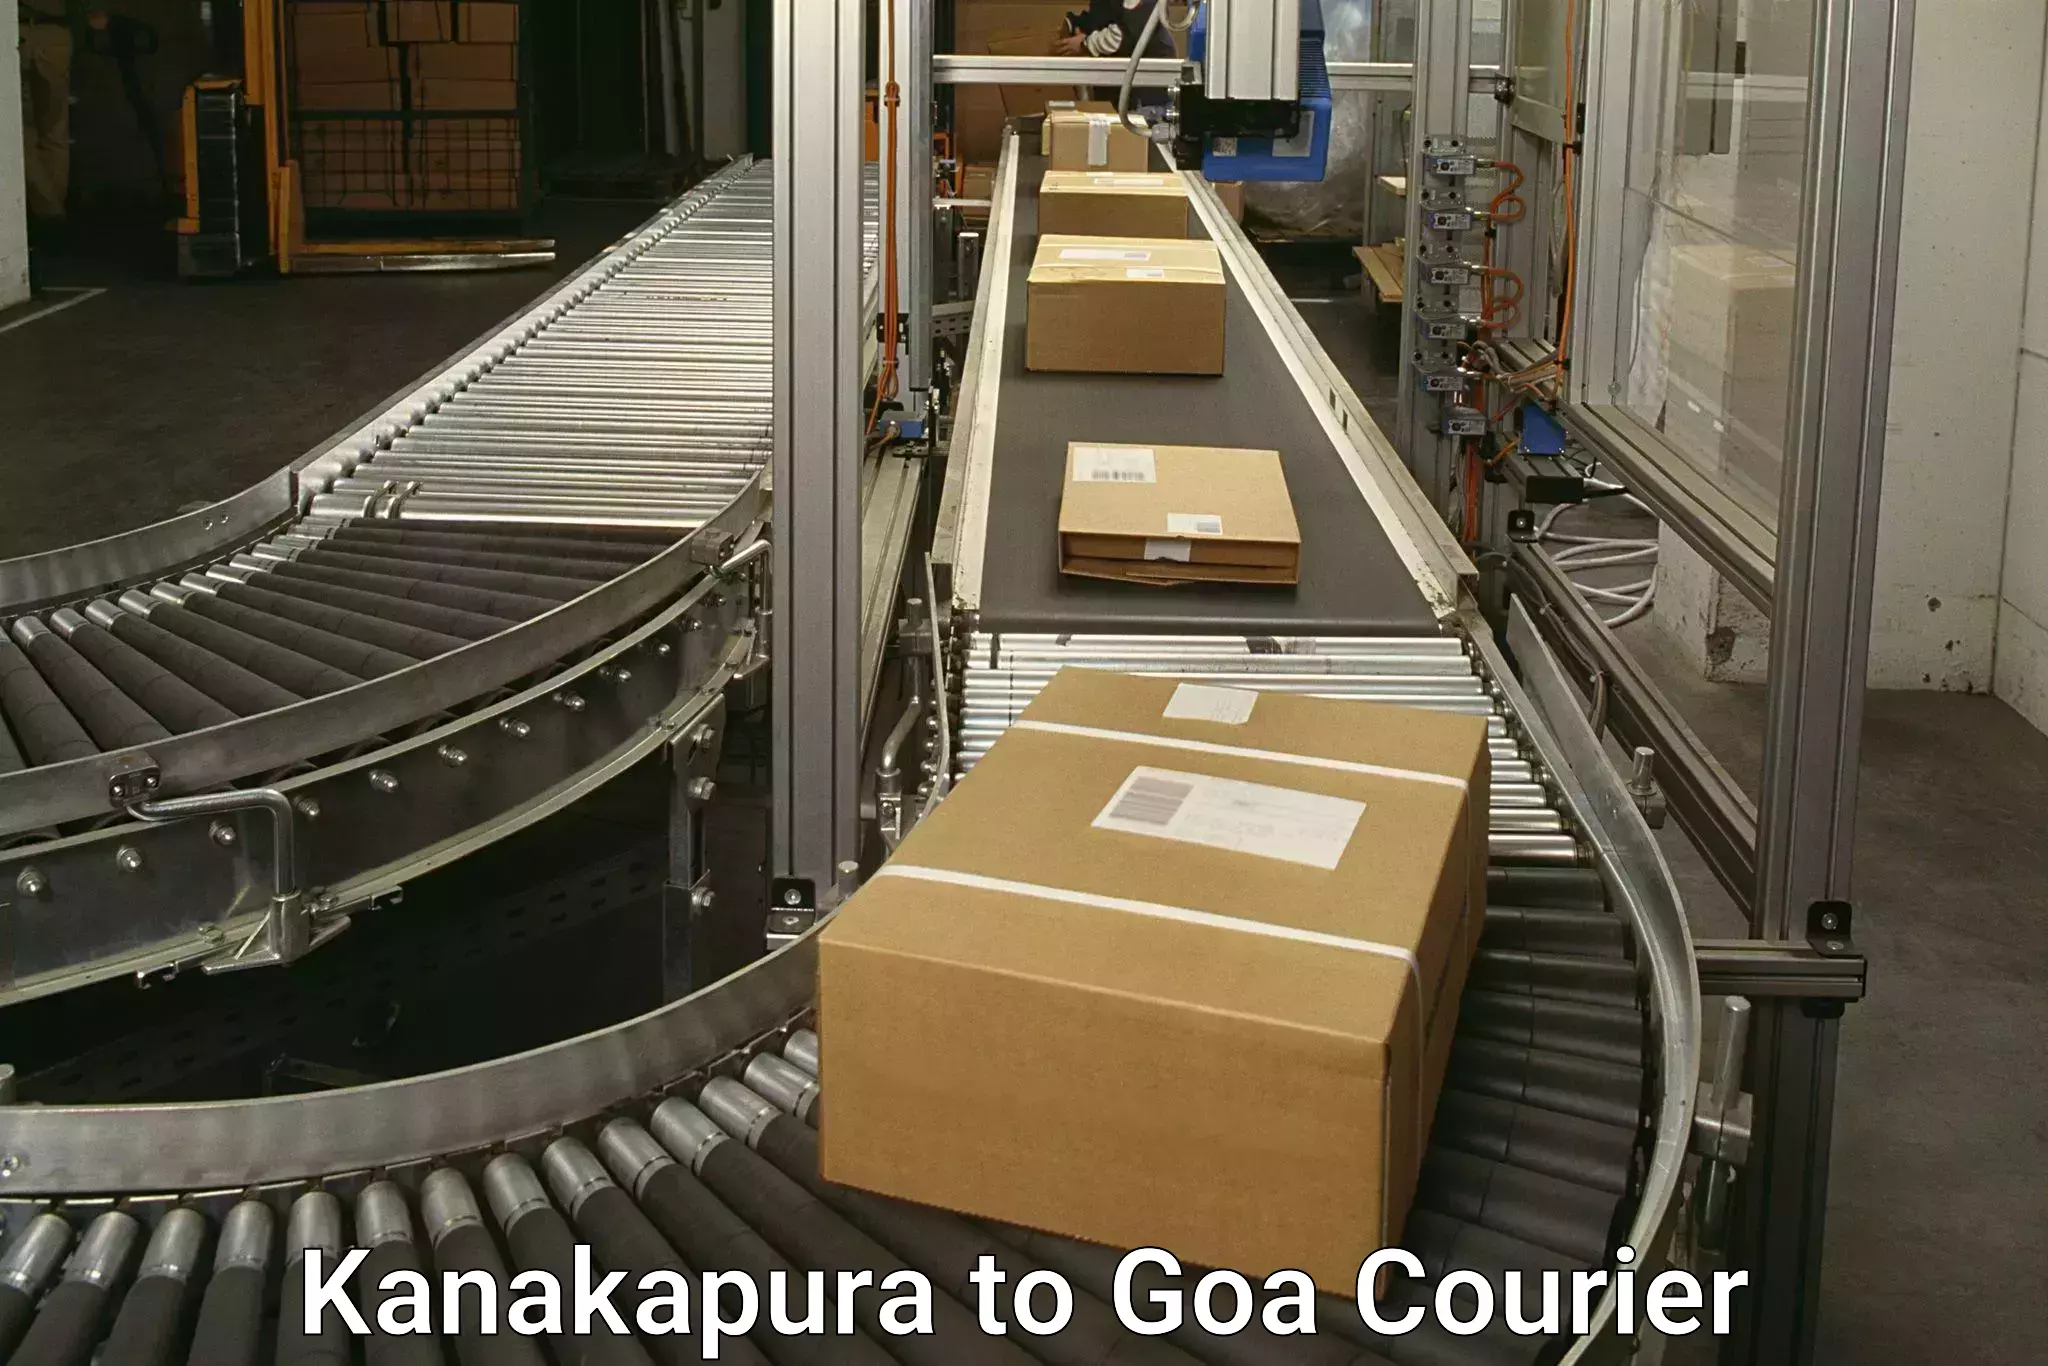 24/7 courier service Kanakapura to Goa